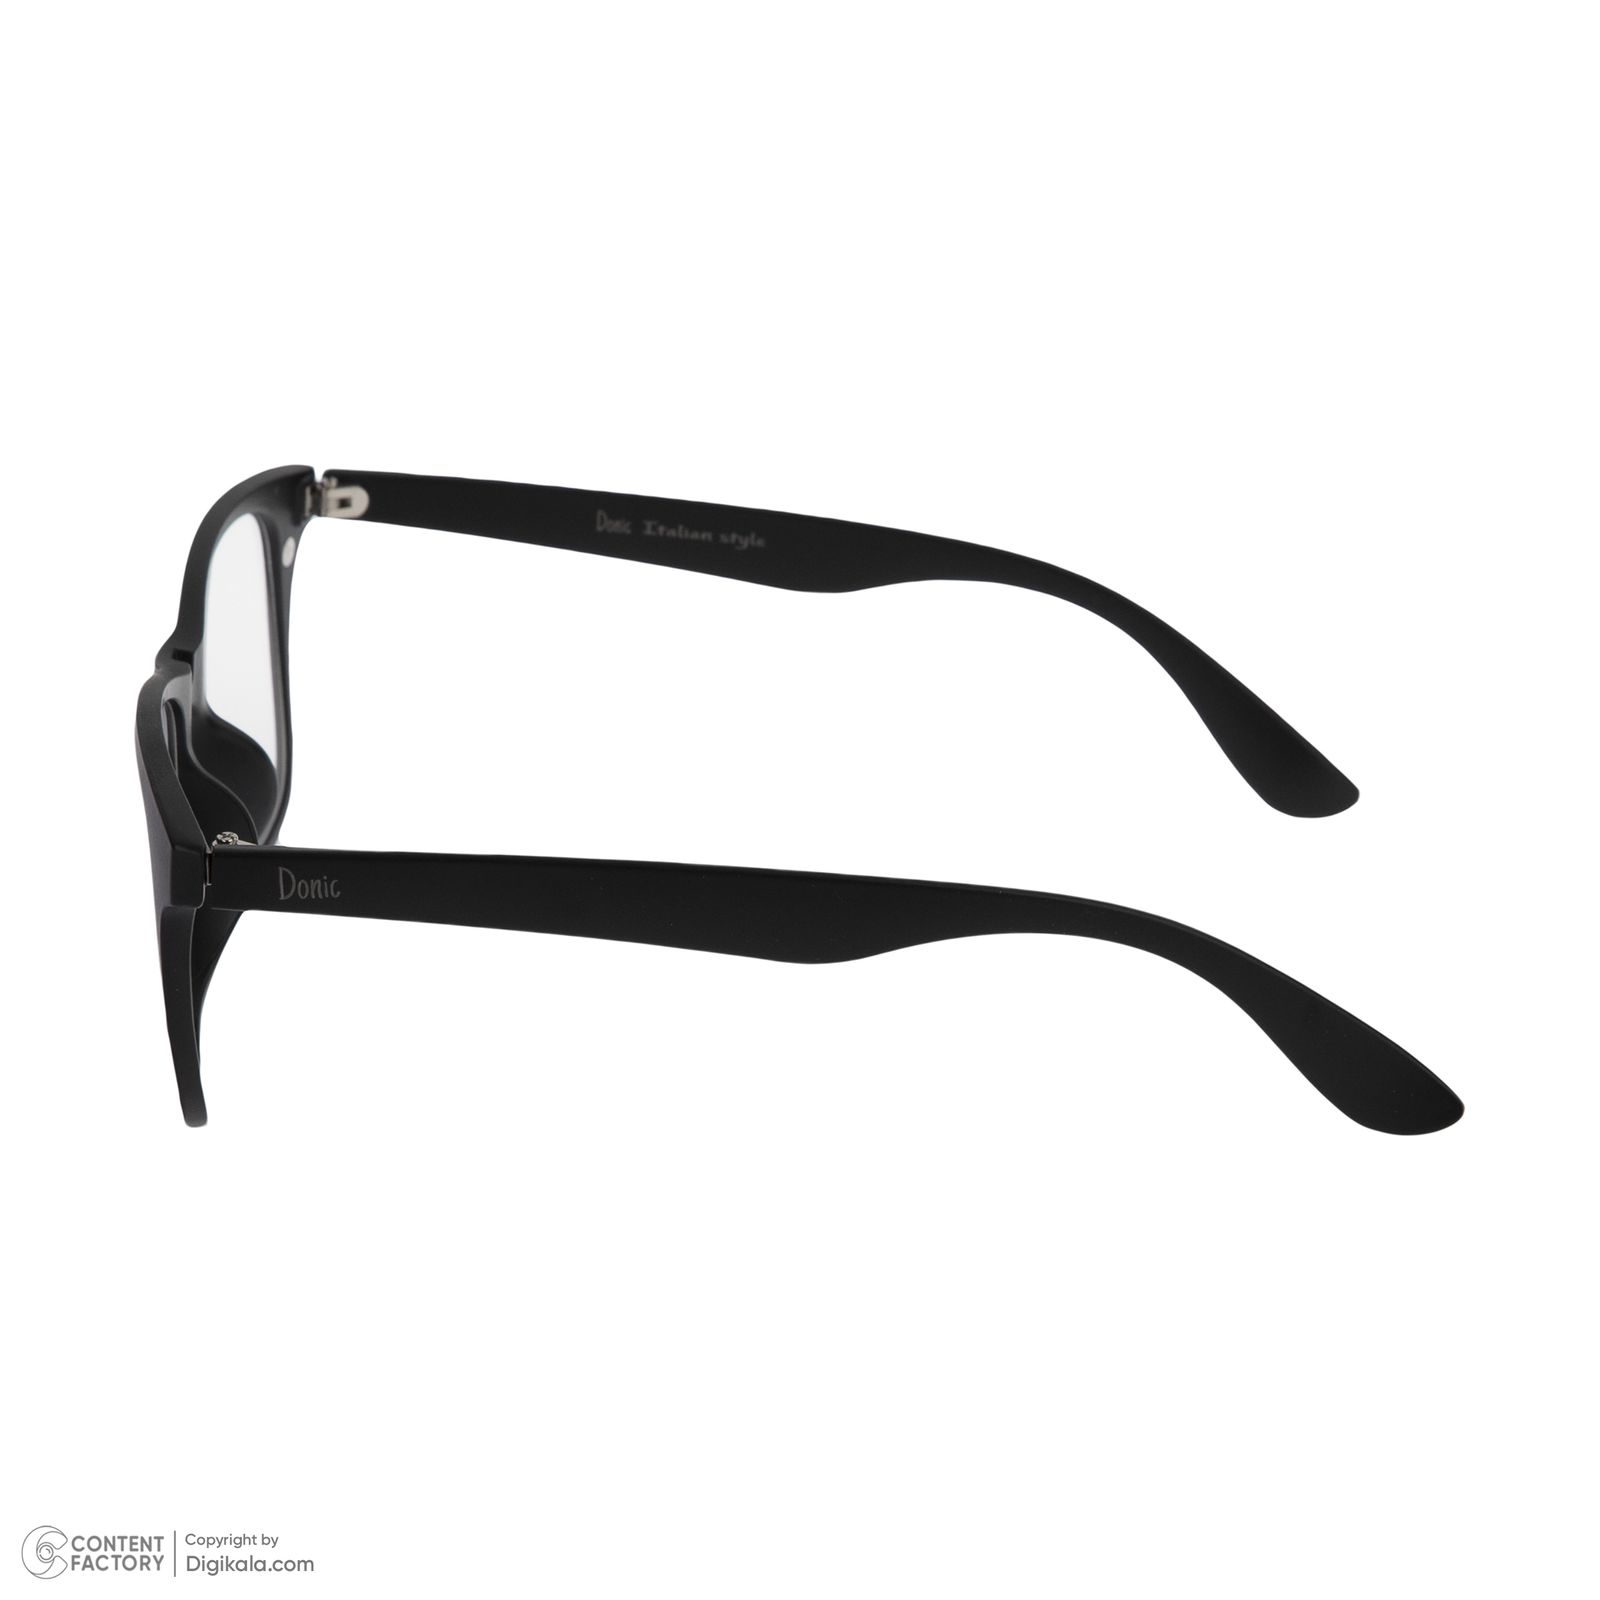 فریم عینک طبی دونیک مدل tr2208-c2 به همراه کاور آفتابی مجموعه 6 عددی -  - 6